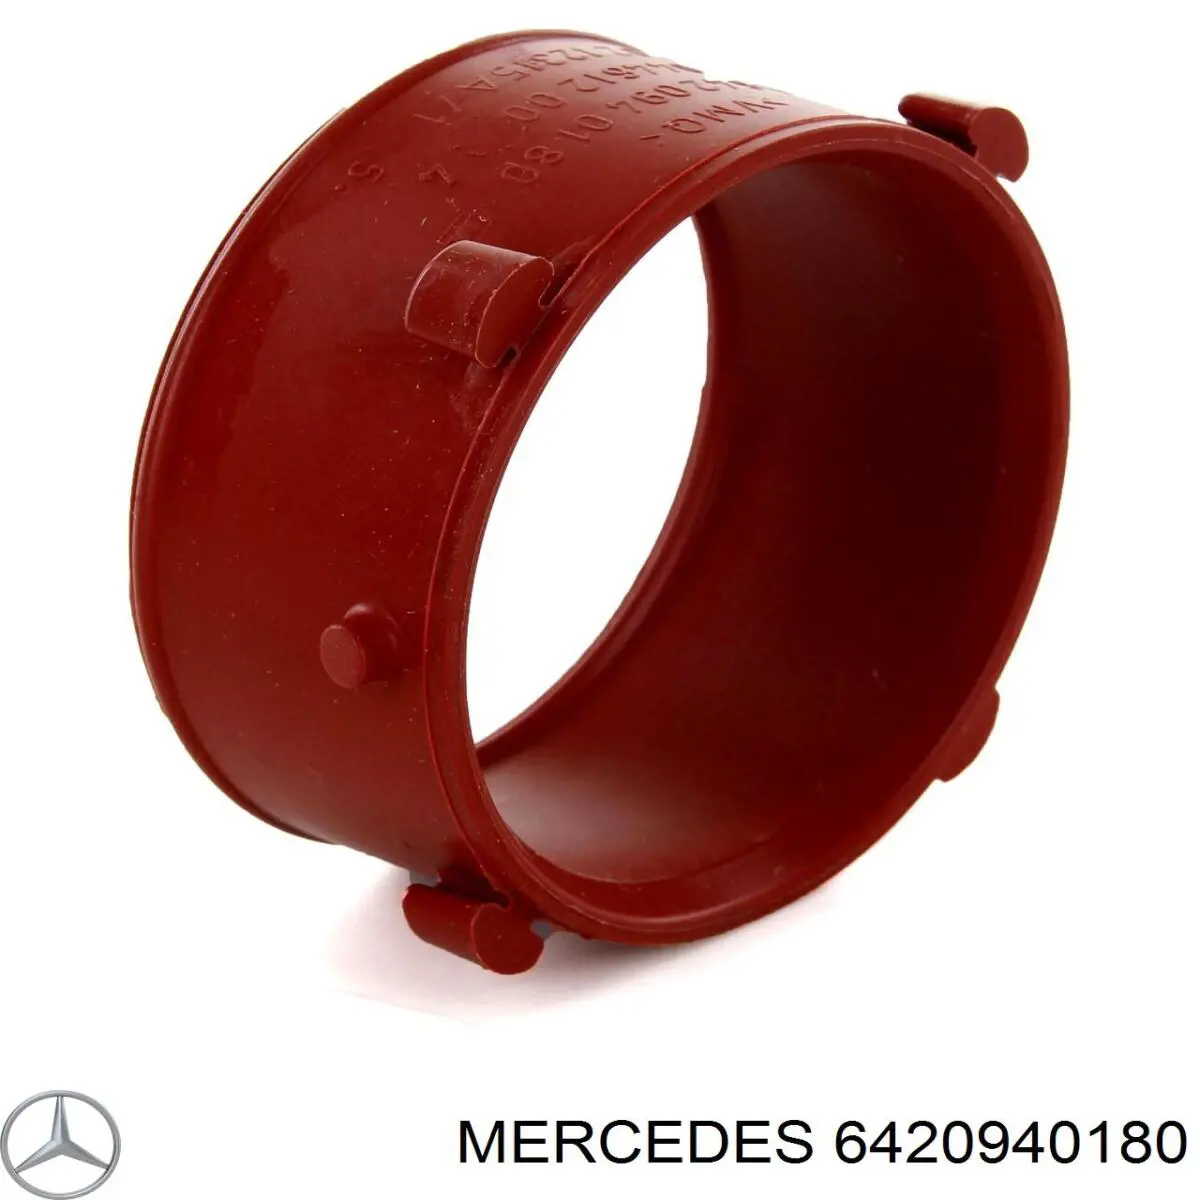 6420940180 Mercedes junta de turbina, flexible inserto